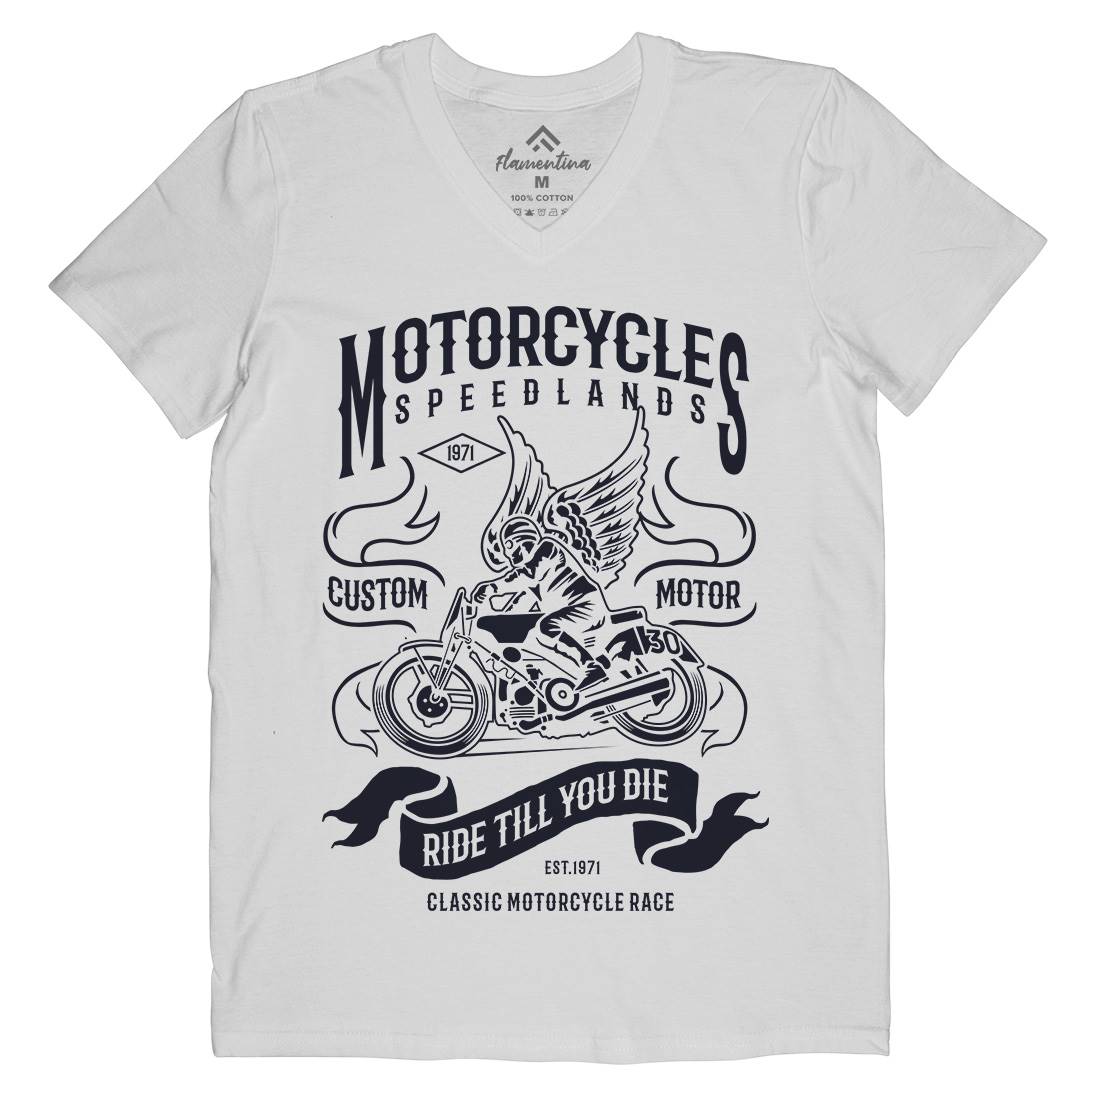 Speed Lands Mens V-Neck T-Shirt Motorcycles B232